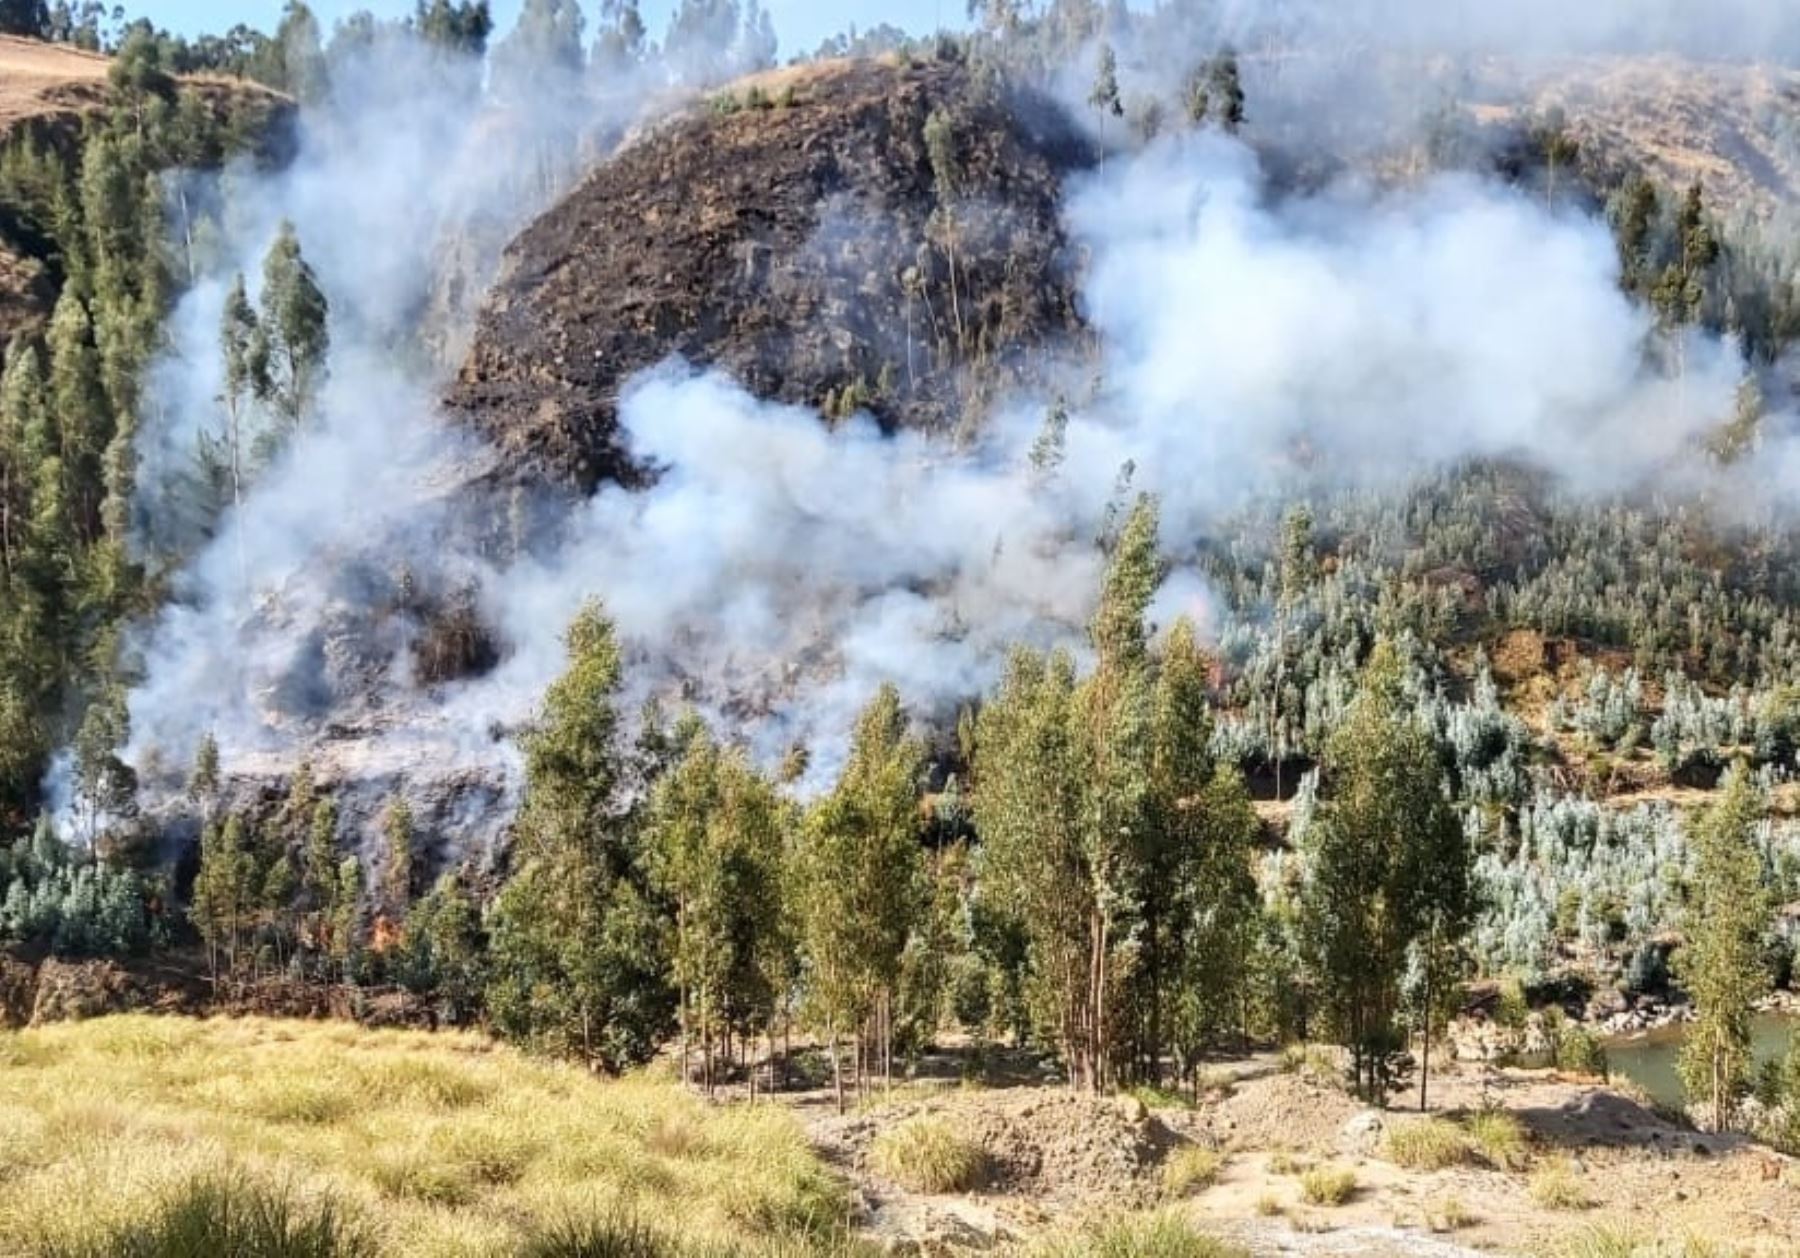 Alerta en Áncash por 8 incendios forestales y 2 urbanos reportados en últimas 72 horas, informó el Centro de Operaciones de Emergencia Regional (COER).